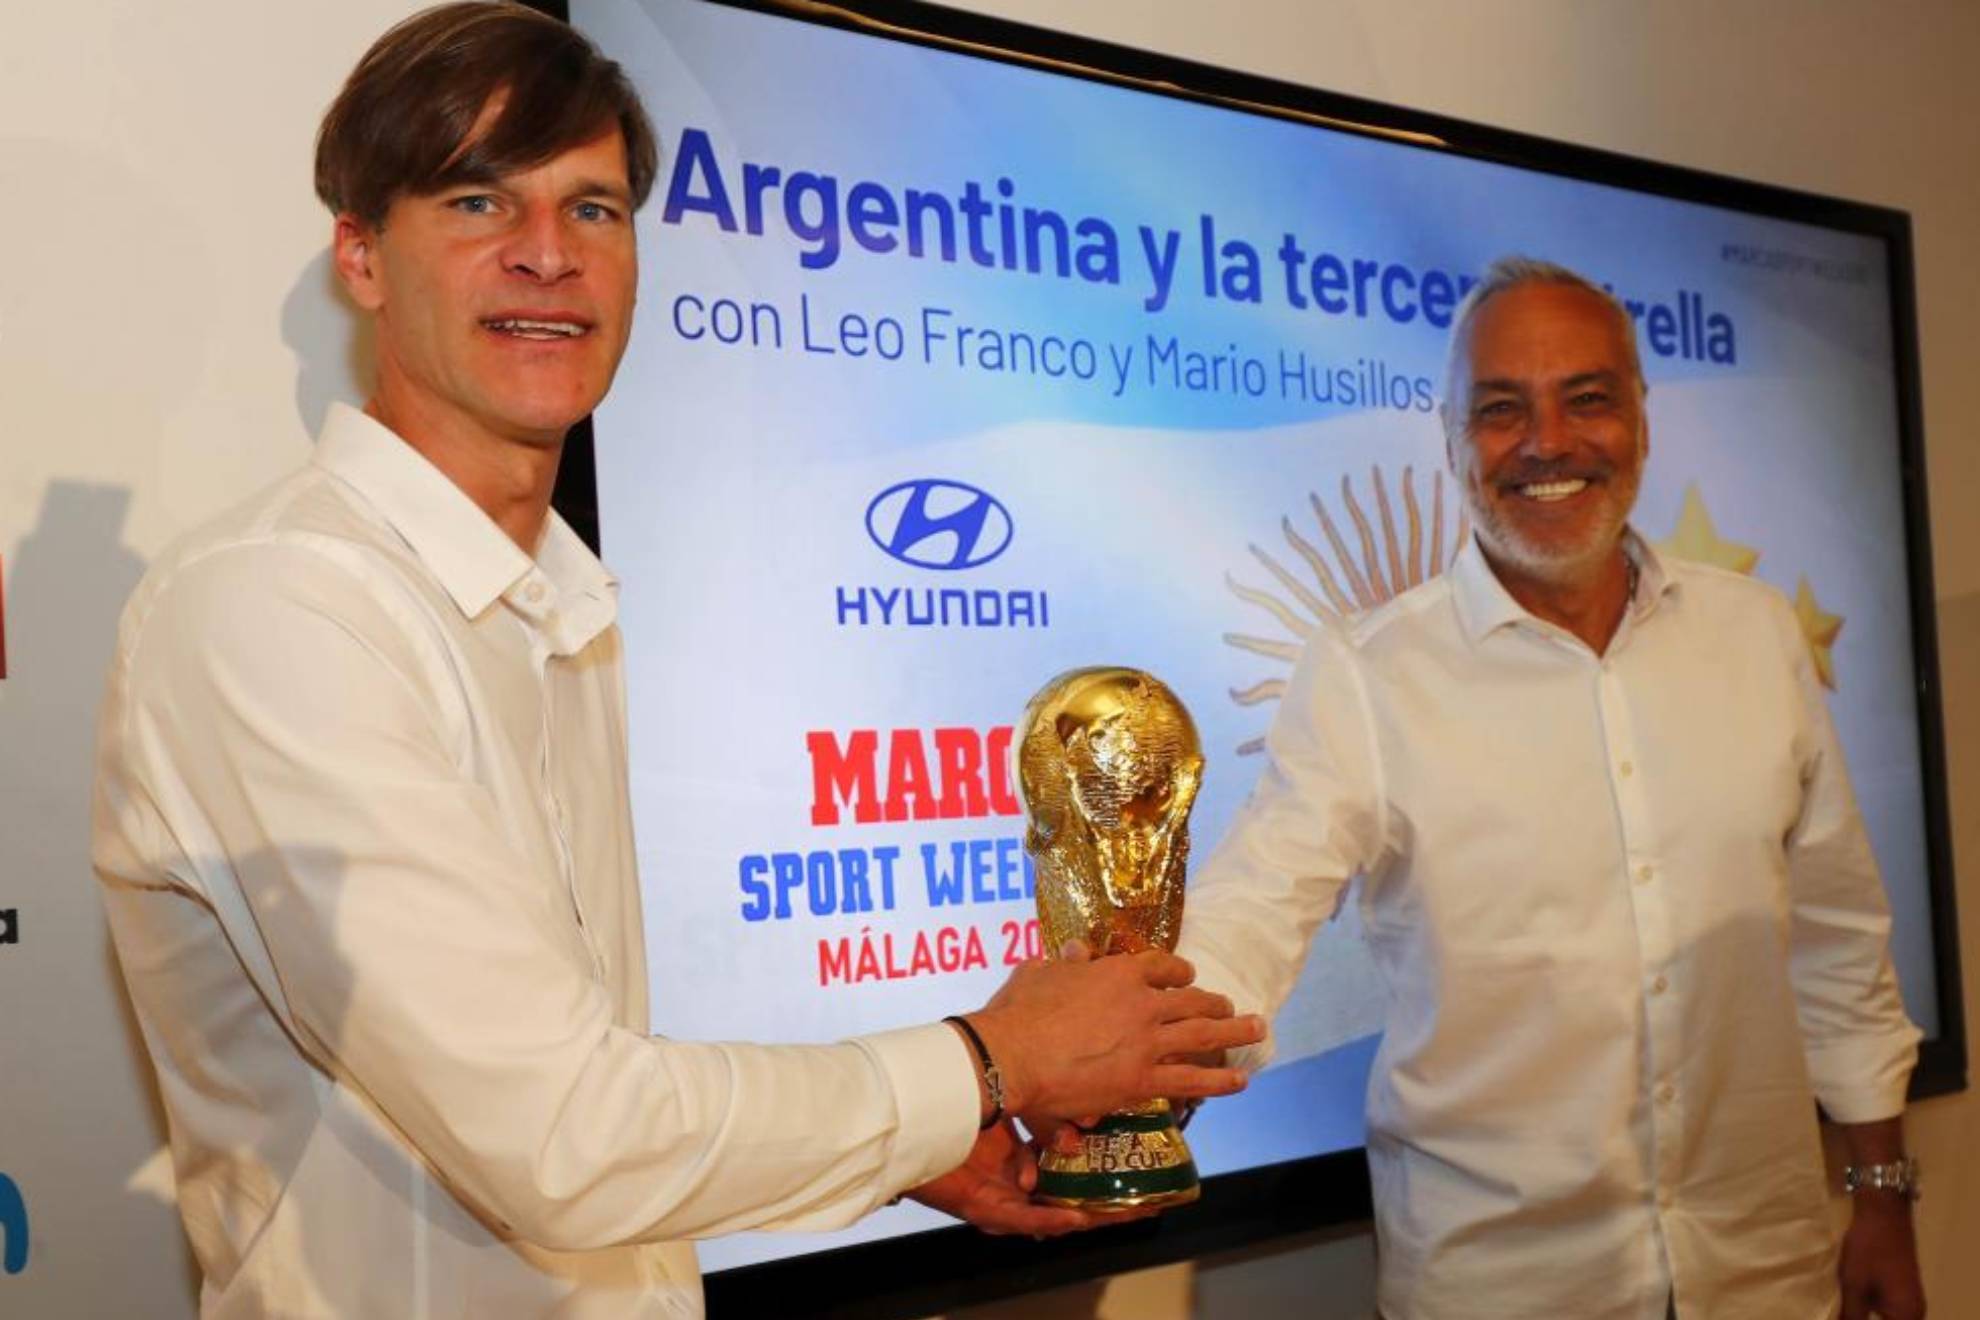 Leo Franco y Mario Husillos posan con una réplica de la Copa del Mundo tras el debate sobre Argentina.